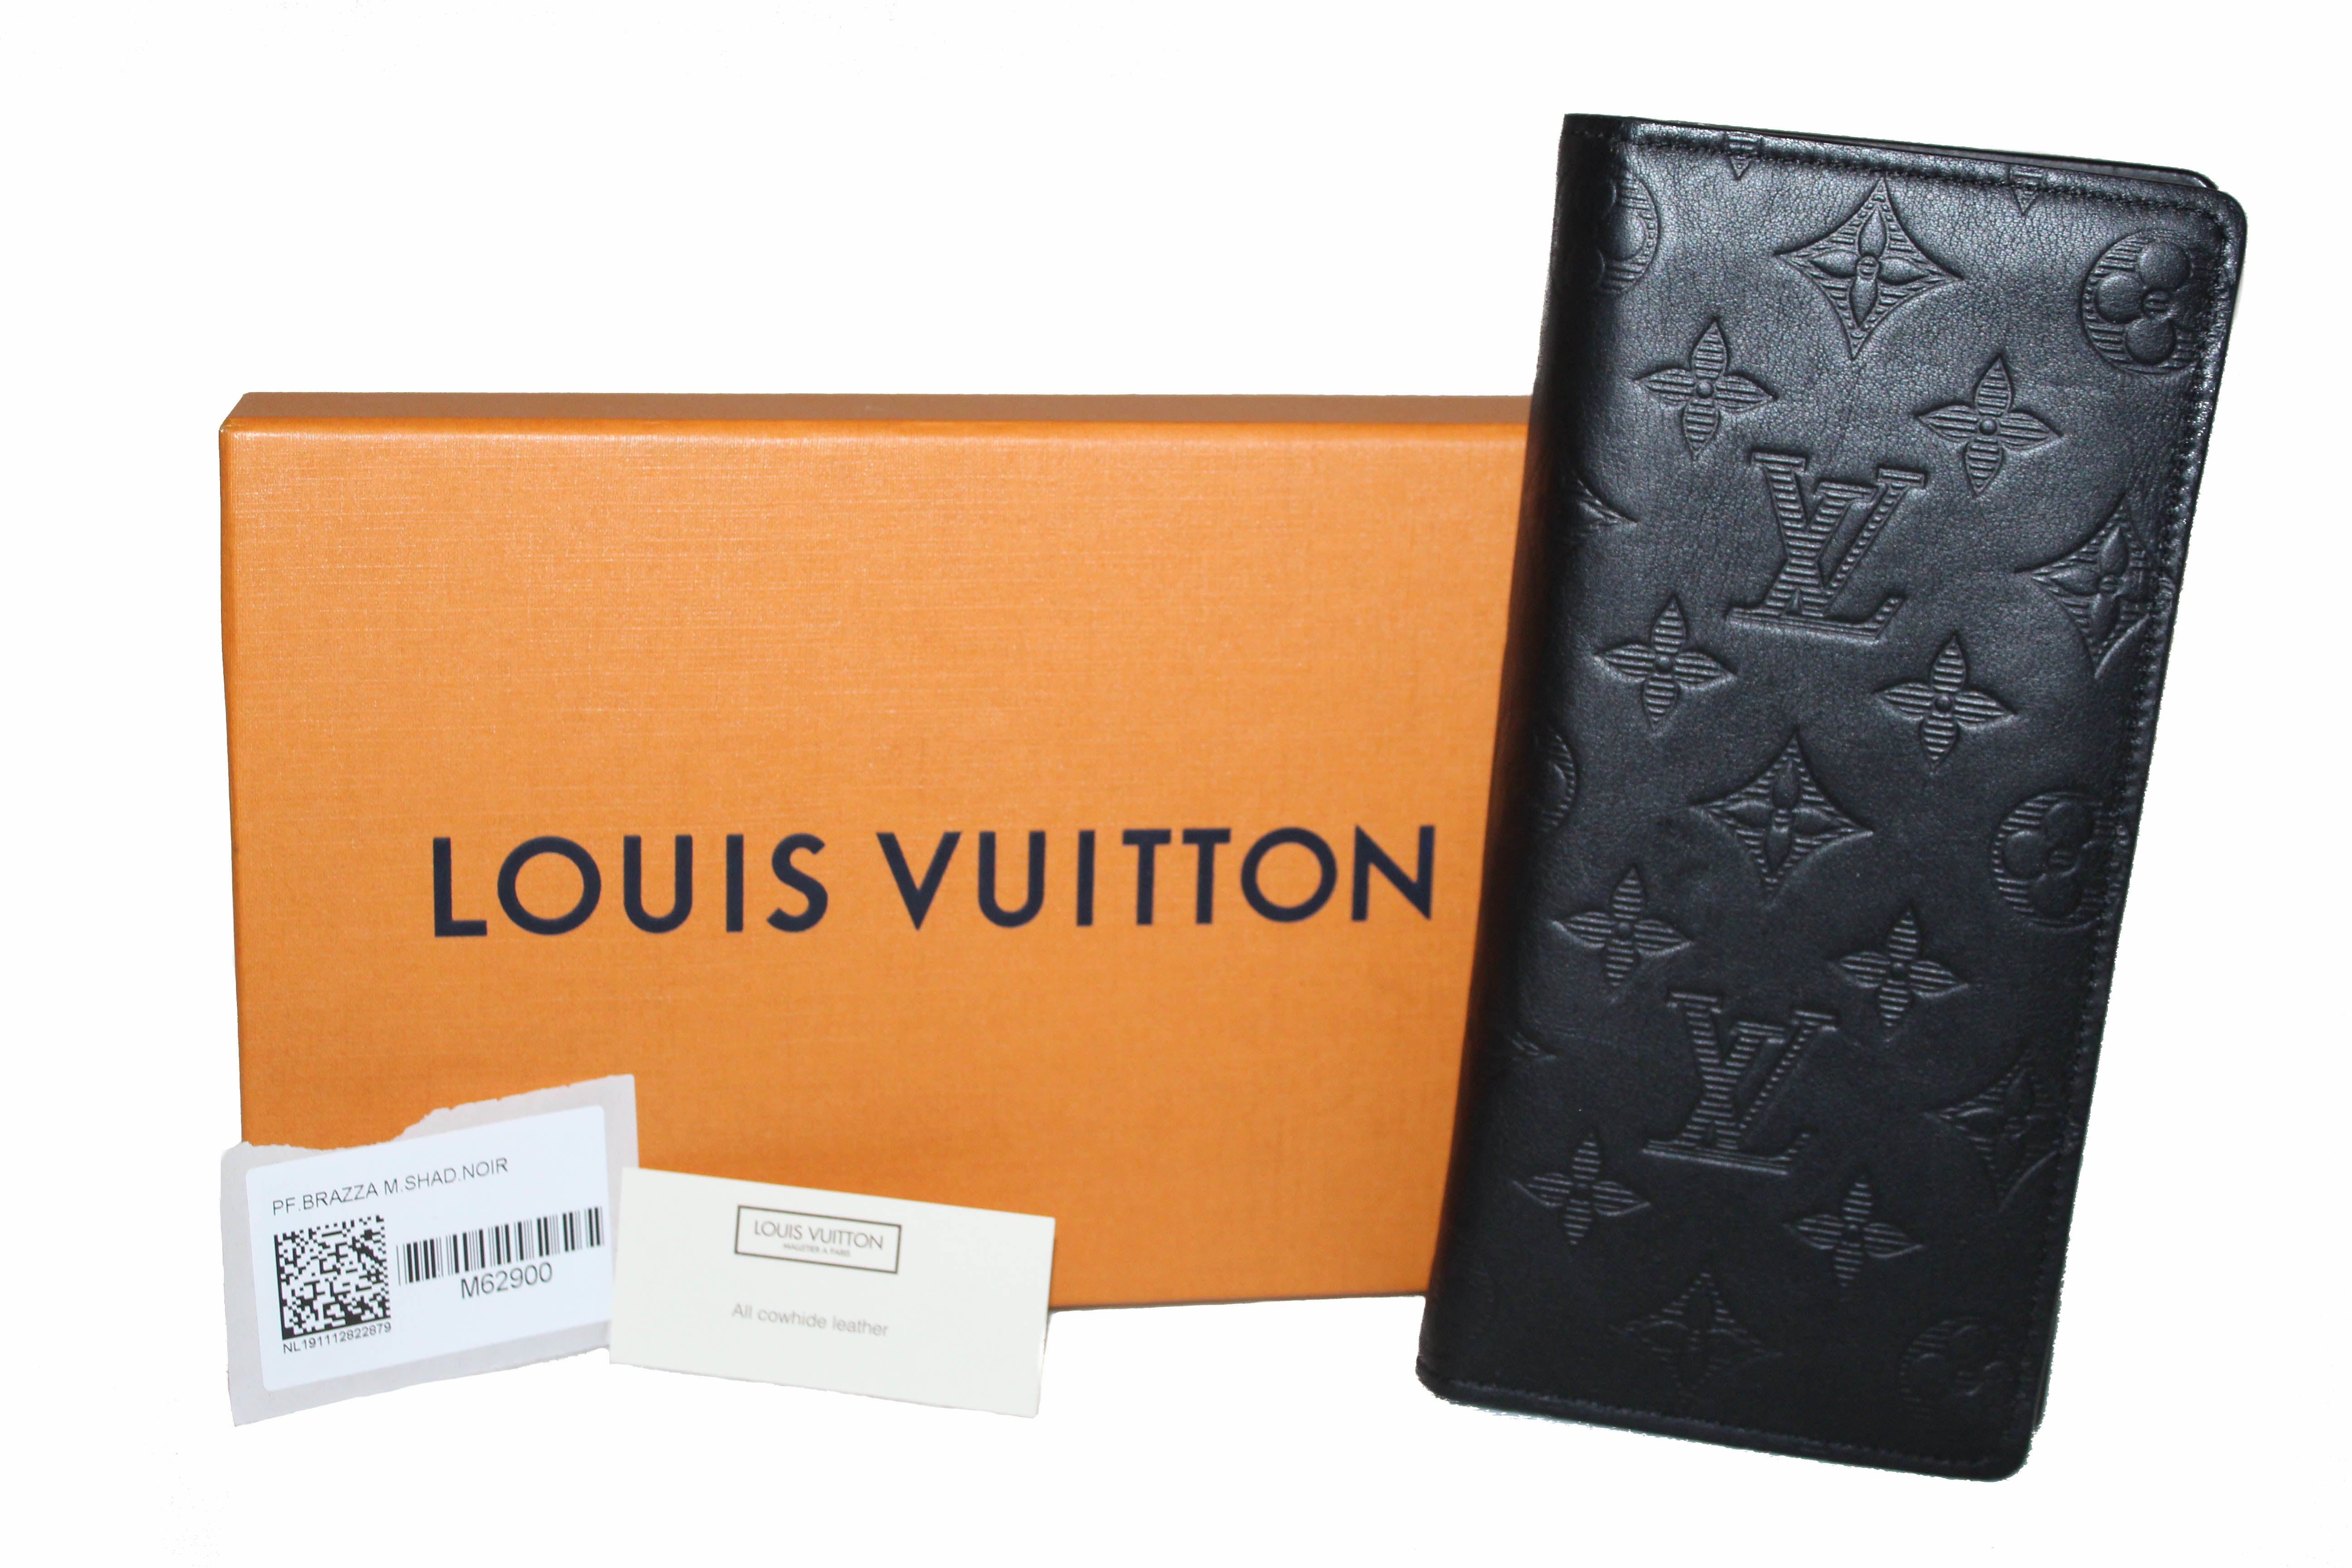 Louis Vuitton Clémence Wallet - ShopStyle